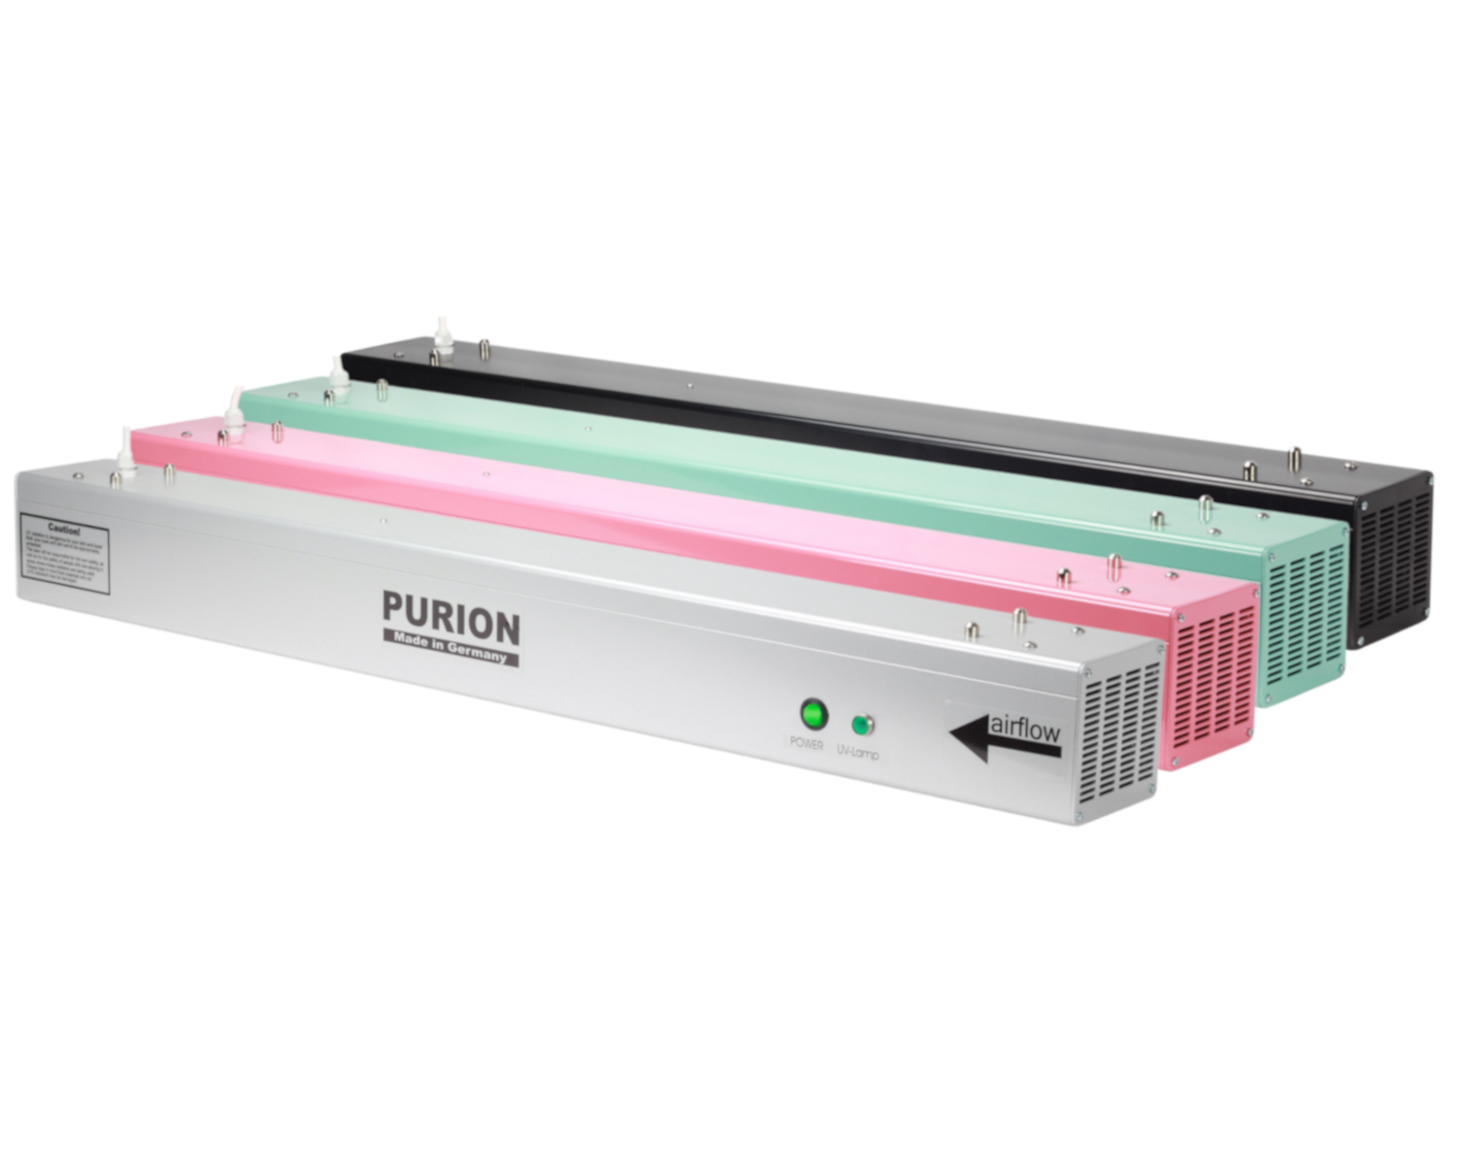 Die AIRPURION 90 active Basic der PURION GmbH verwendet eine UV-C-Lampe zur Desinfektion von Luft und Oberflächen.